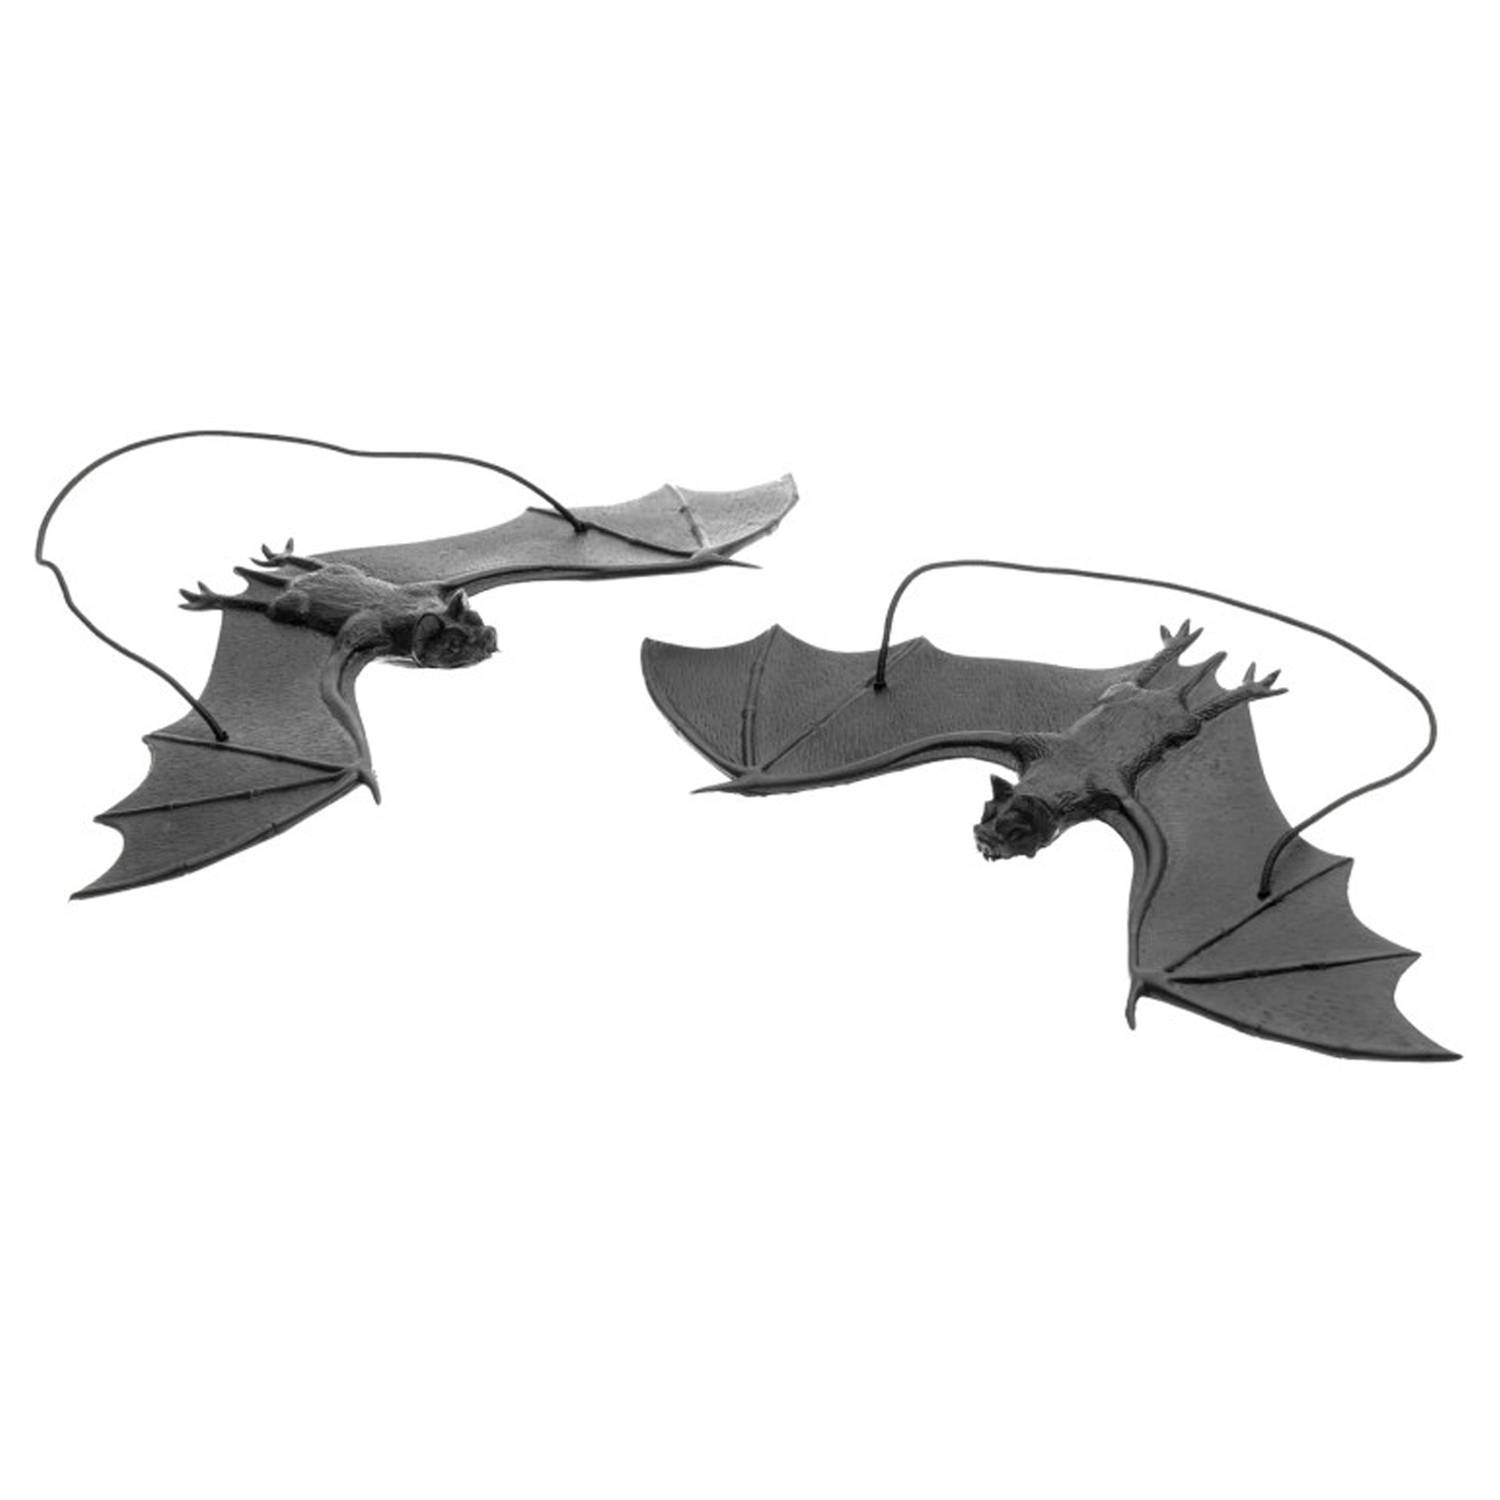 Chaks nep vleermuizen hangend - 23 cm - zwart - 2x stuks - griezel/horror thema decoratie dieren